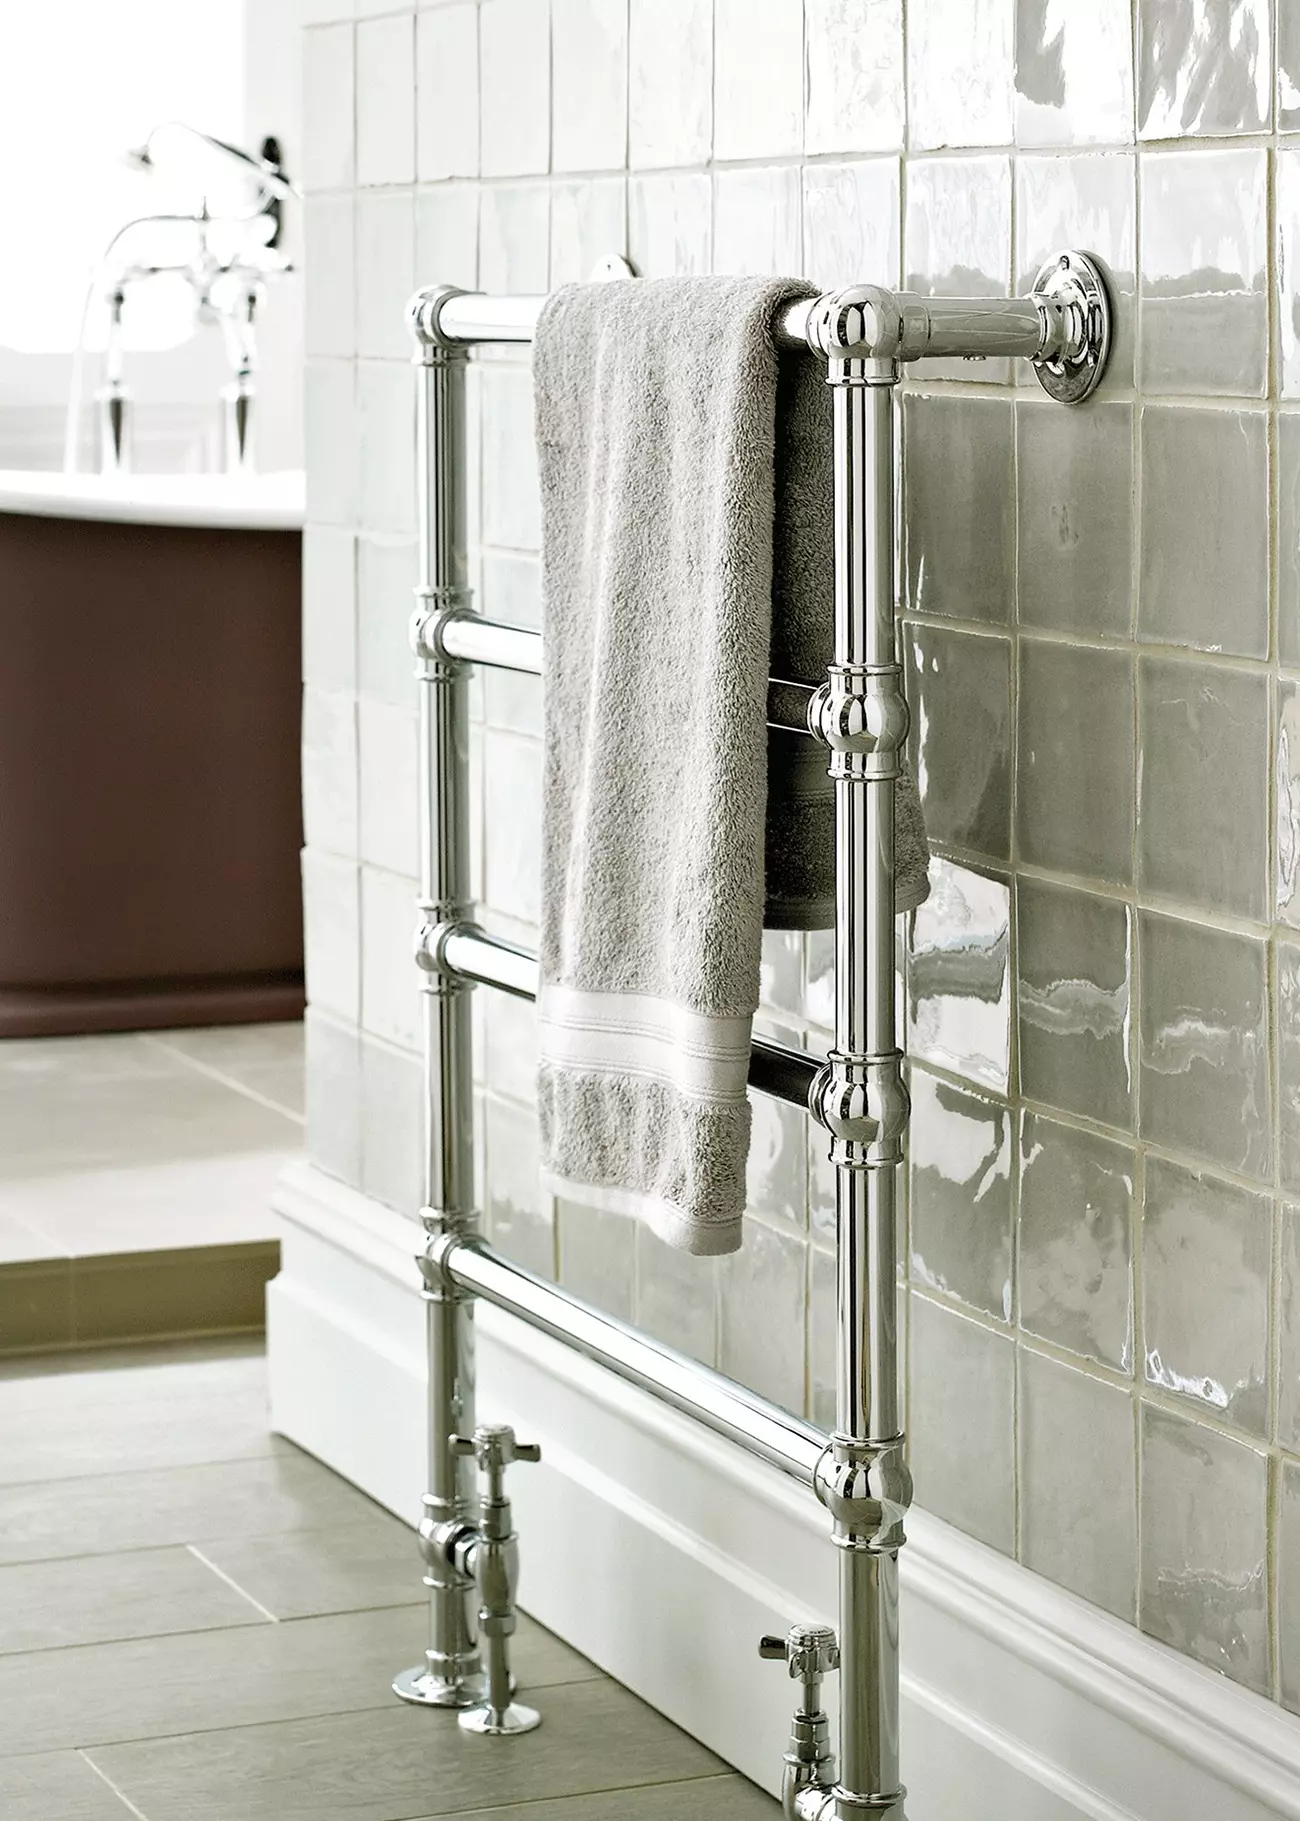 Flow Heated Towel Rail in bathroom